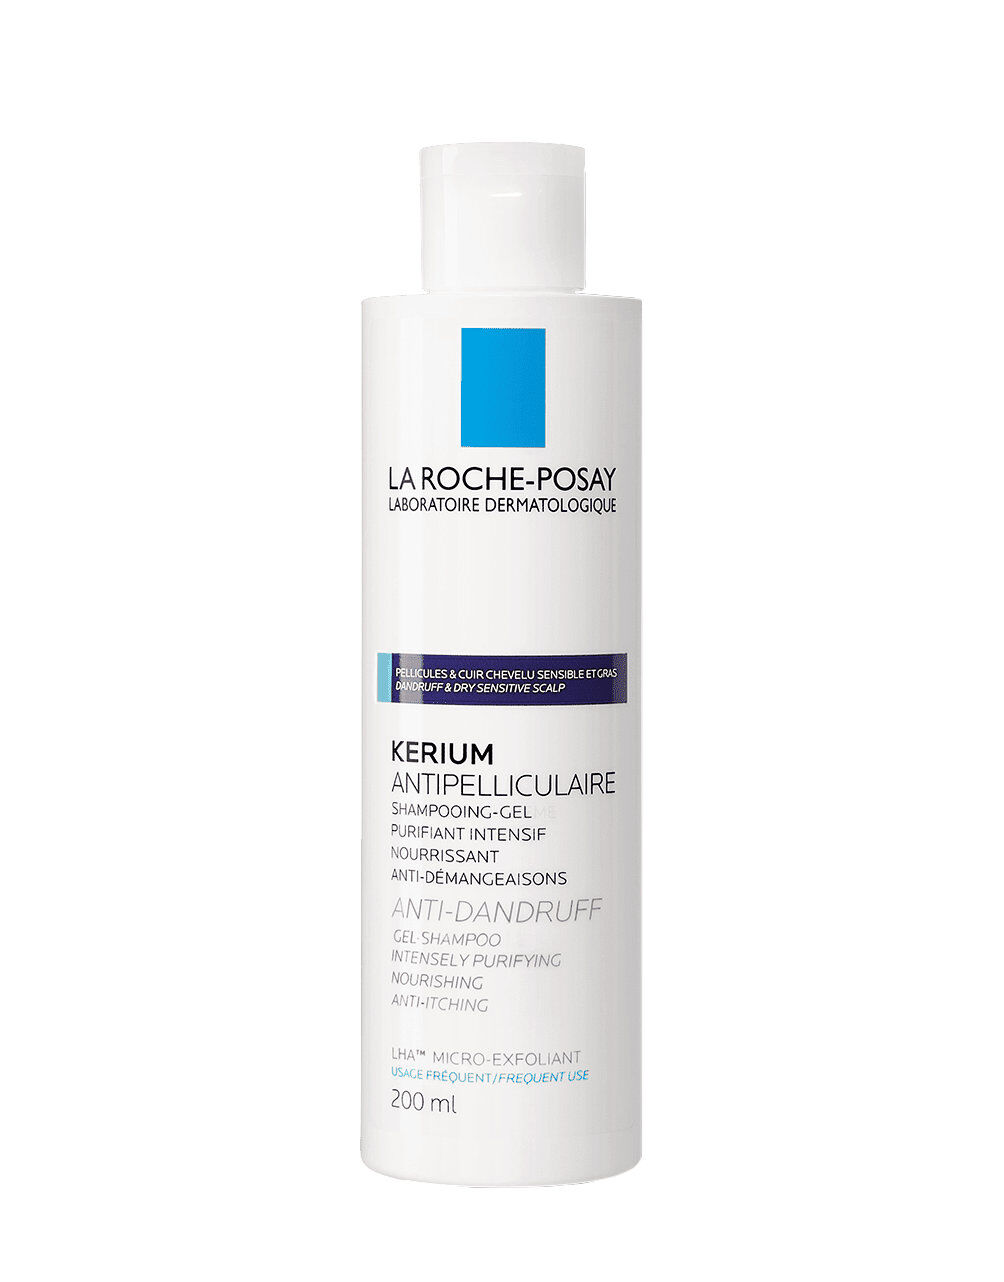 LA ROCHE-POSAY Kerium - Anti-Forfora Shampoo-Gel Cuio Capelluto Sensibile E Grasso 200 Ml